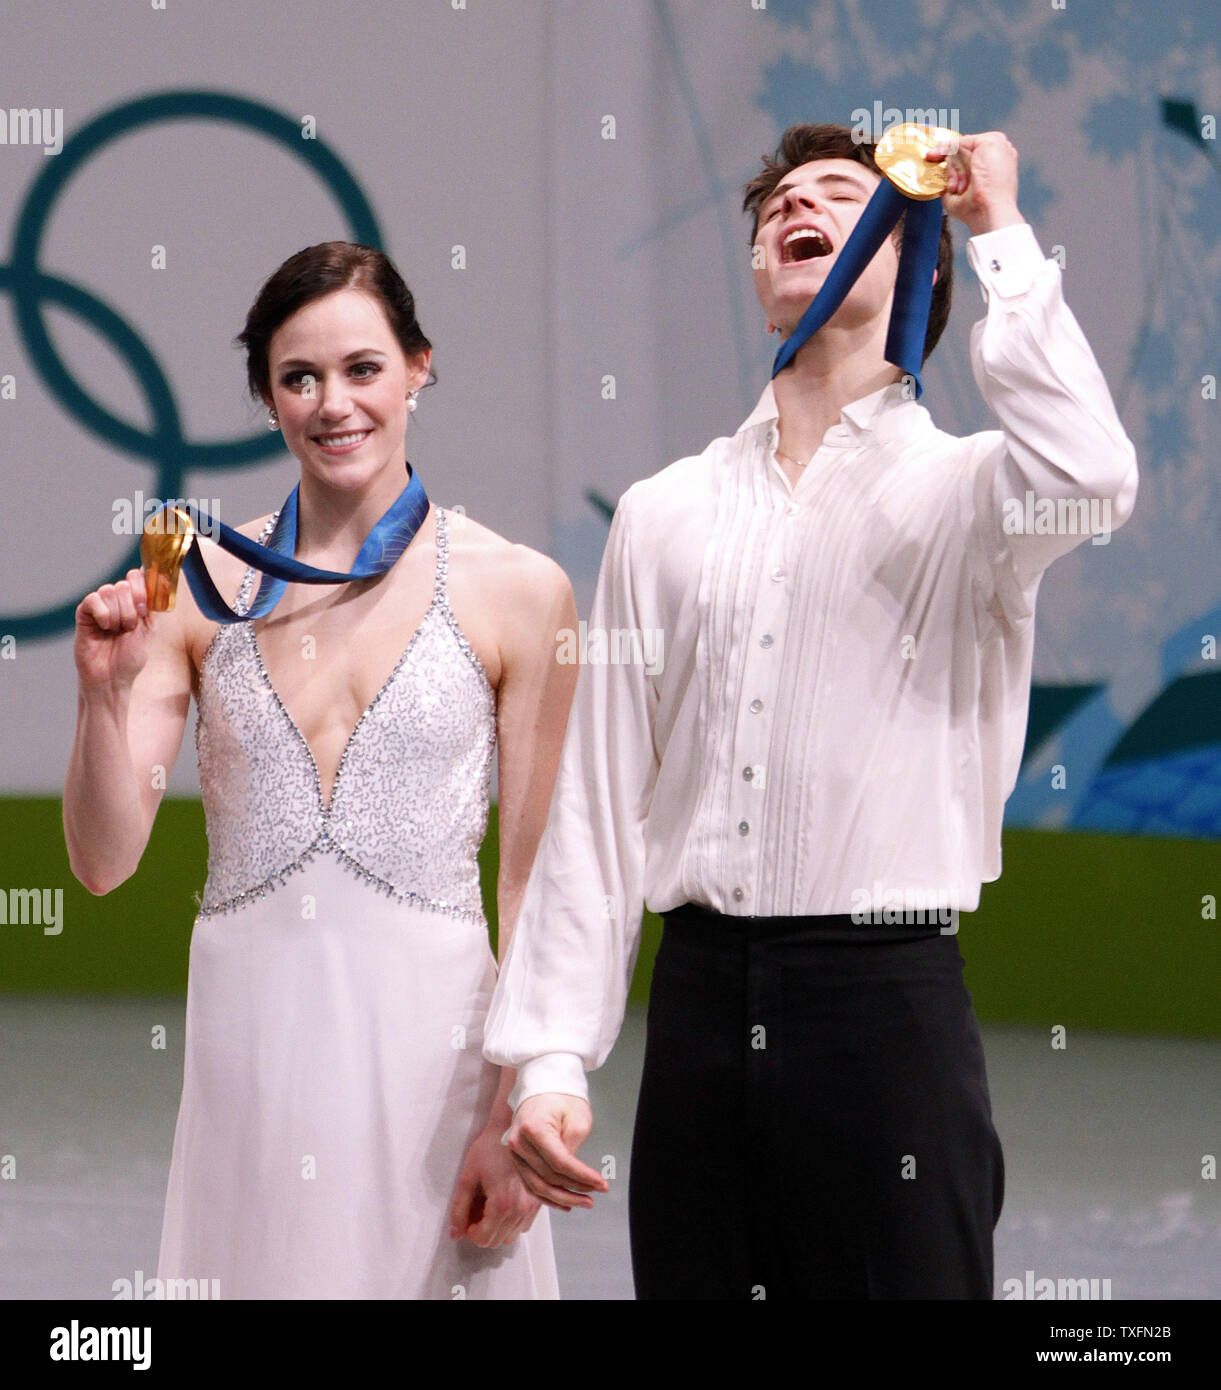 Tessa virtud (L) y Scott efecto muaré de Canadá mantiene sus medallas de tras ganar el concurso de baile de hielo de patinaje artístico en los Juegos Olímpicos de Invierno de